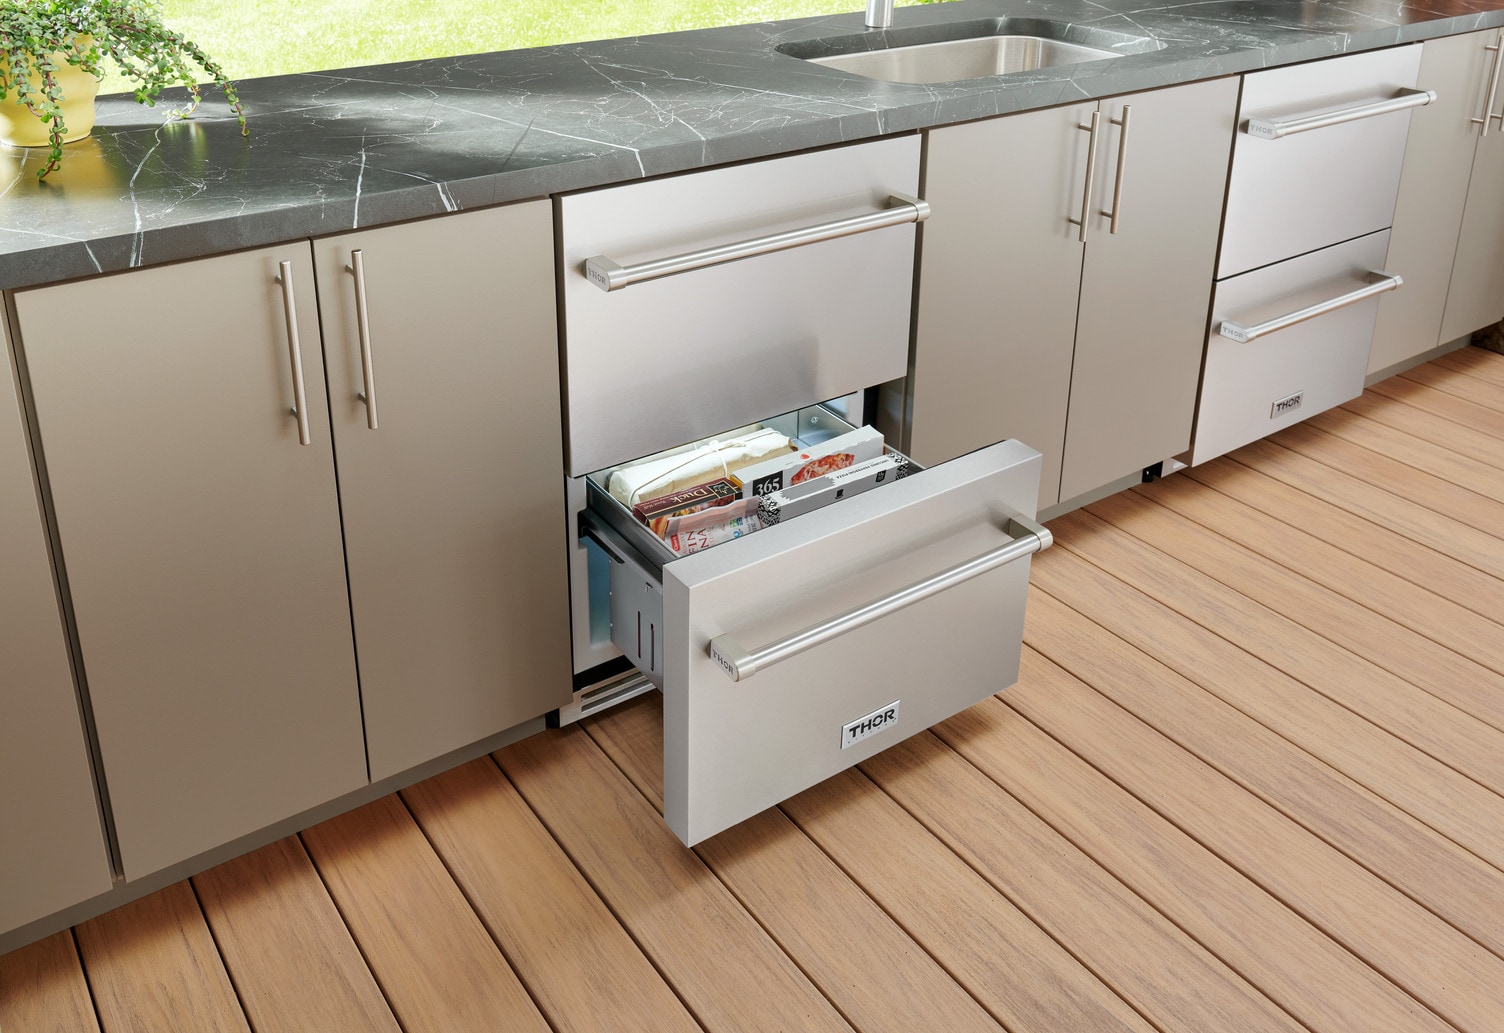 KUDF204KPA by KitchenAid - 24 Panel-Ready Undercounter Double-Drawer  Refrigerator/Freezer